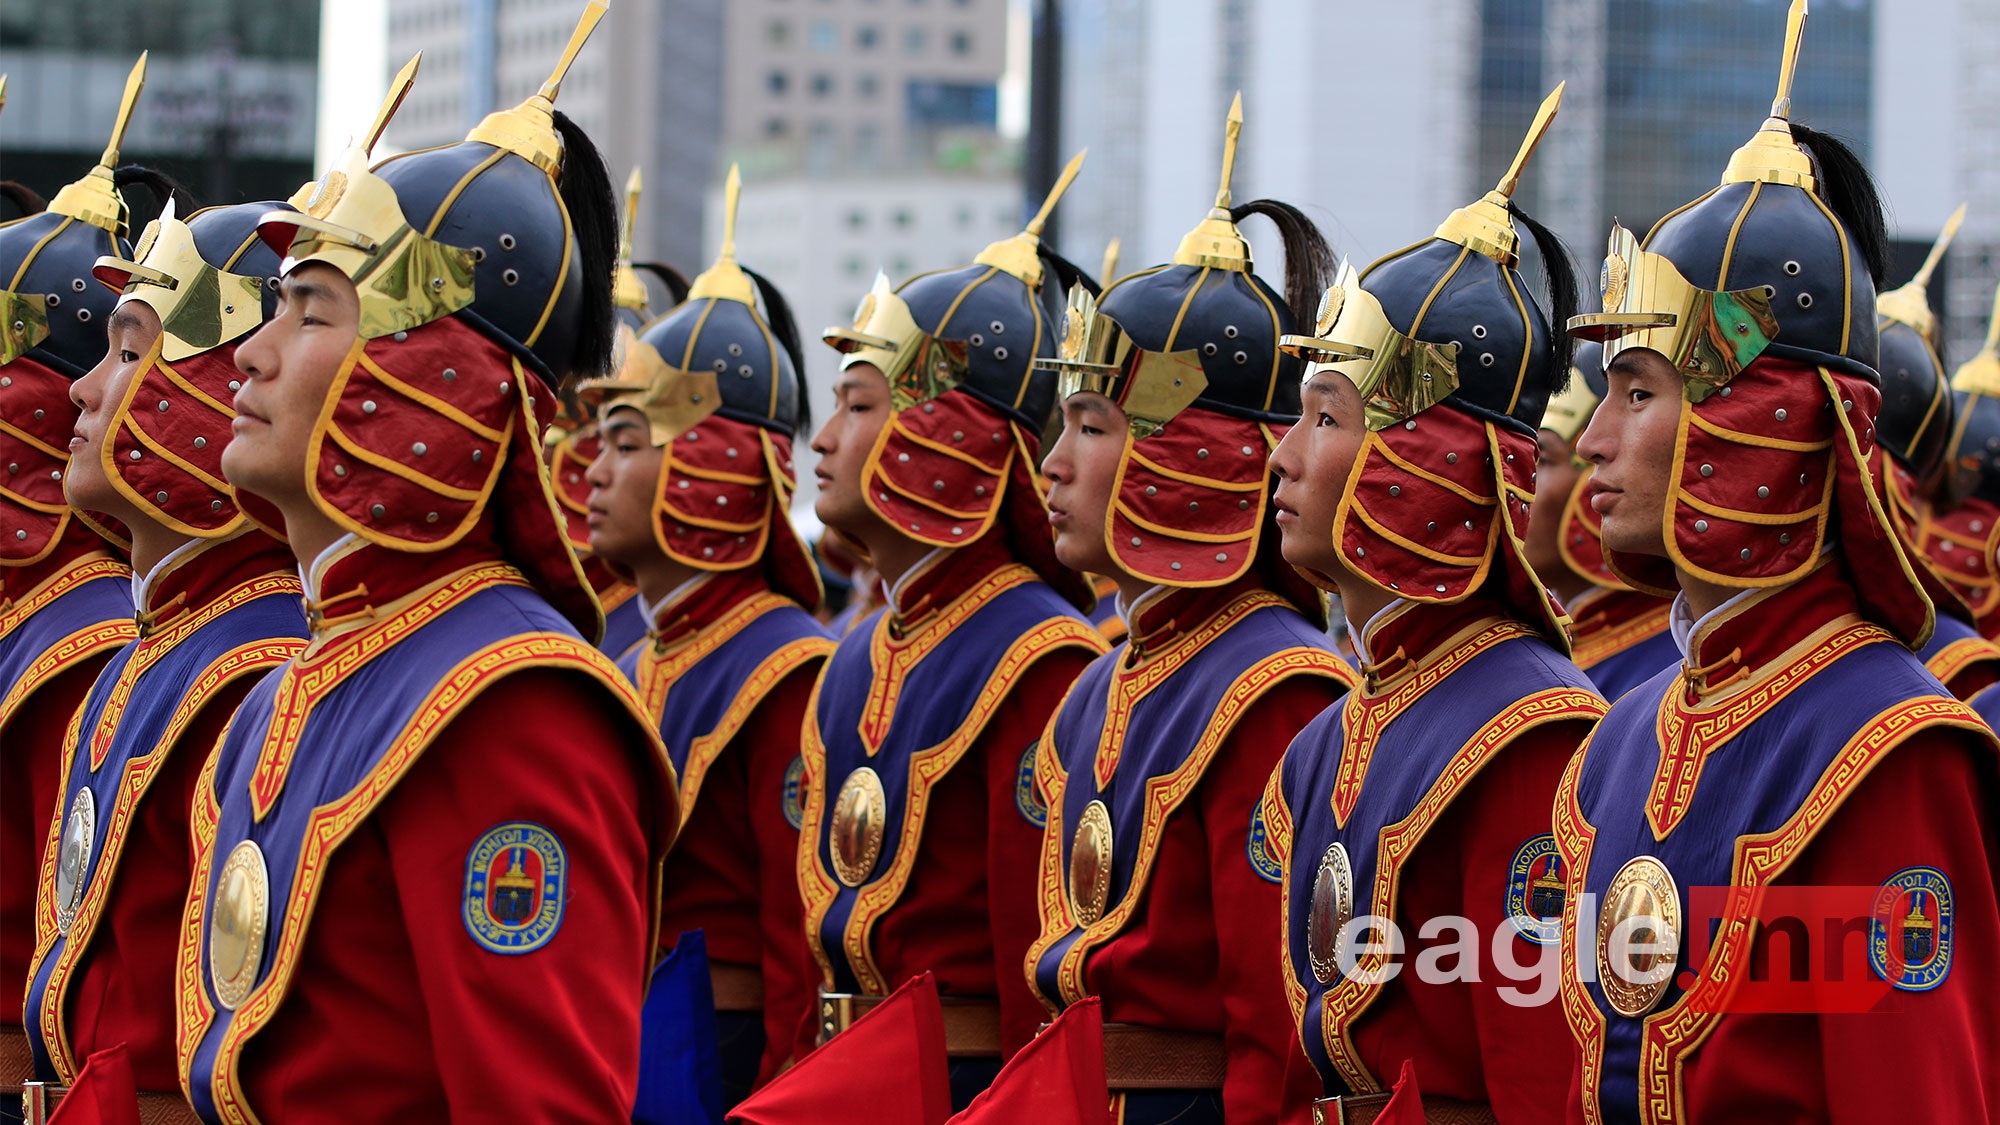 难得一见的蒙古国阅兵,女兵看起来都很壮硕,仪仗队穿铠甲举老枪